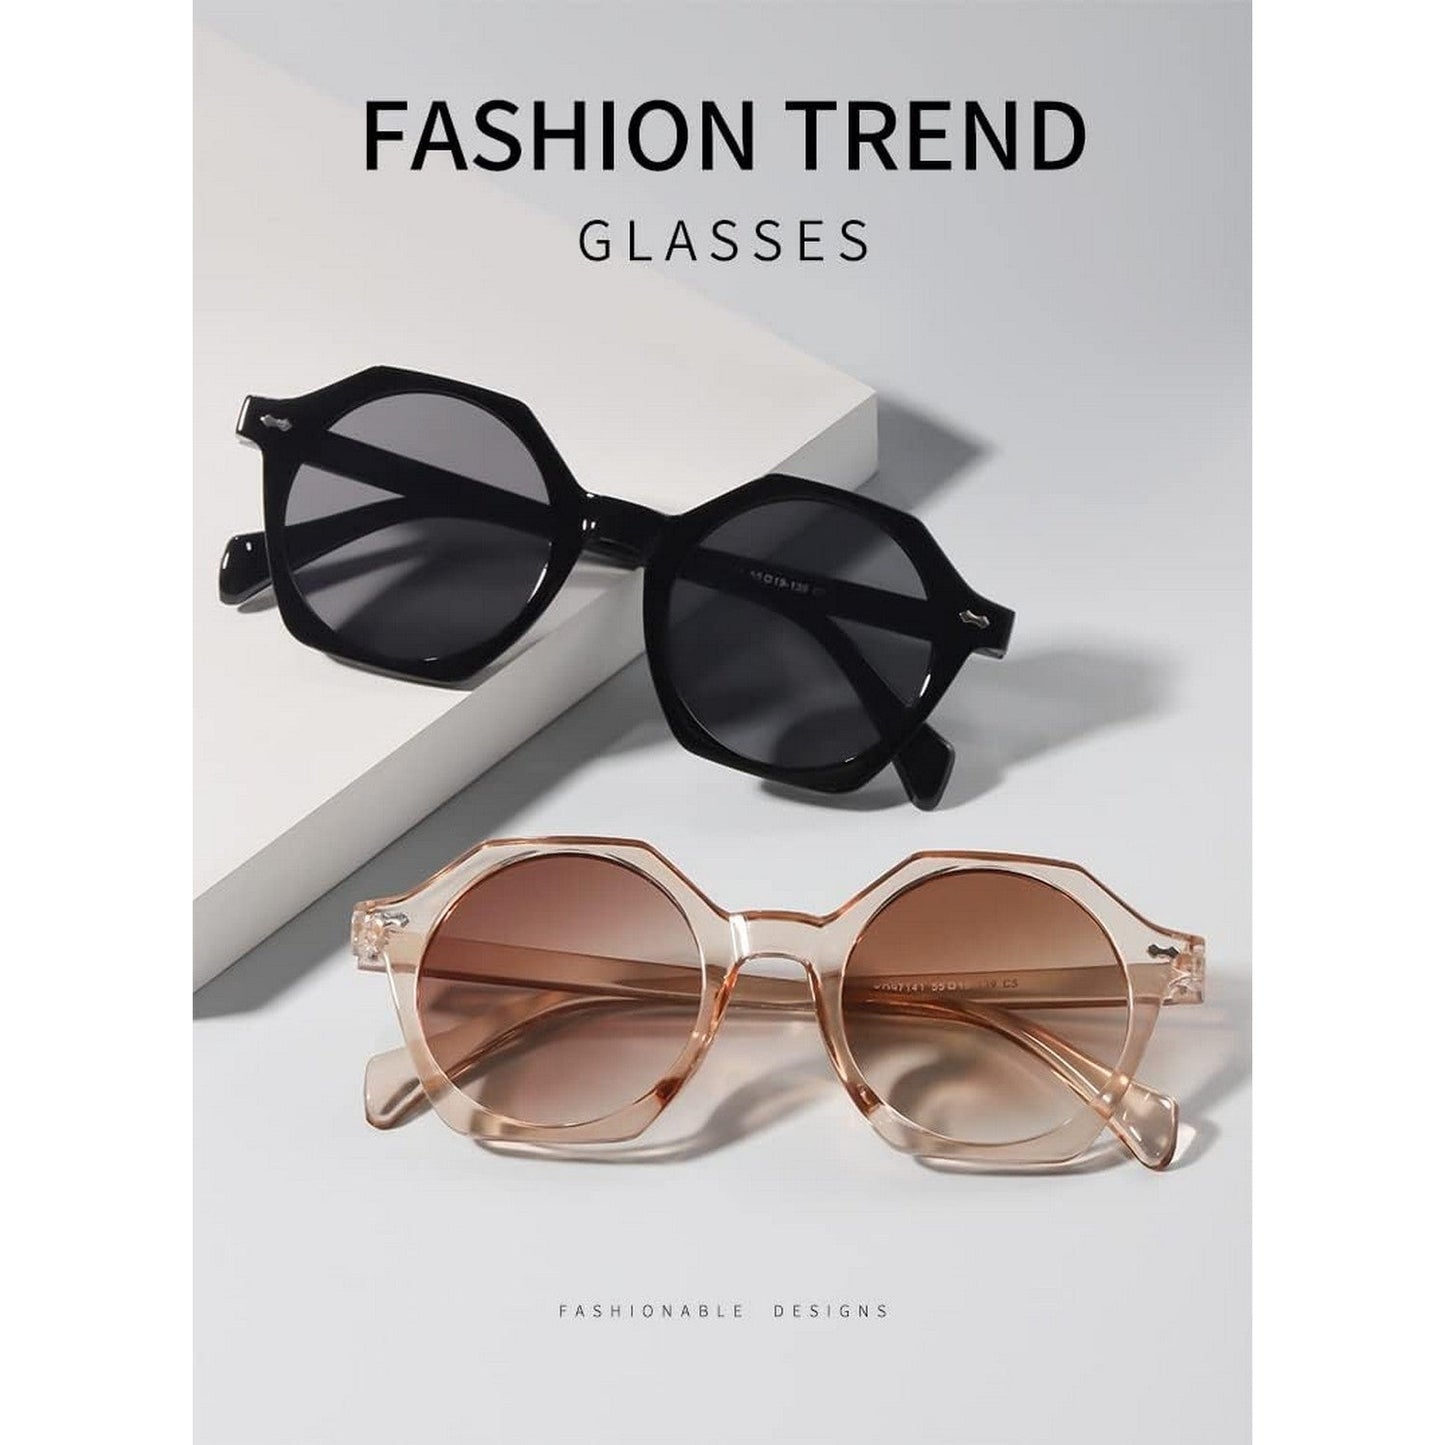 LunaShade Round Hexa Sunglasses for Men and Women Beach Glasses